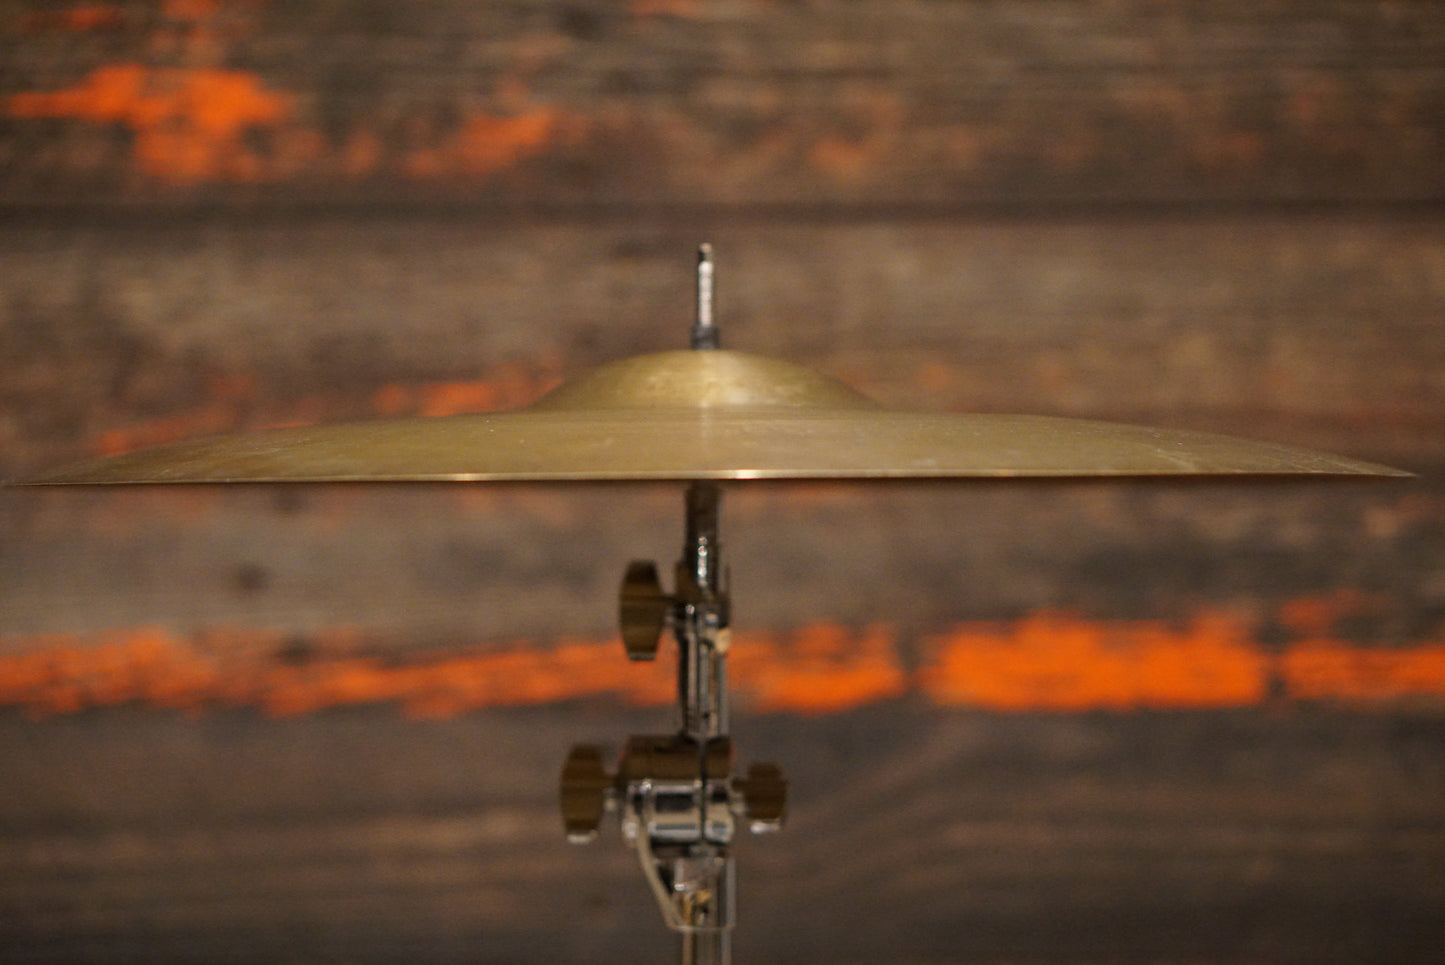 Zildjian 20" Avedis 1960s Crash/Ride Cymbal - 1745g